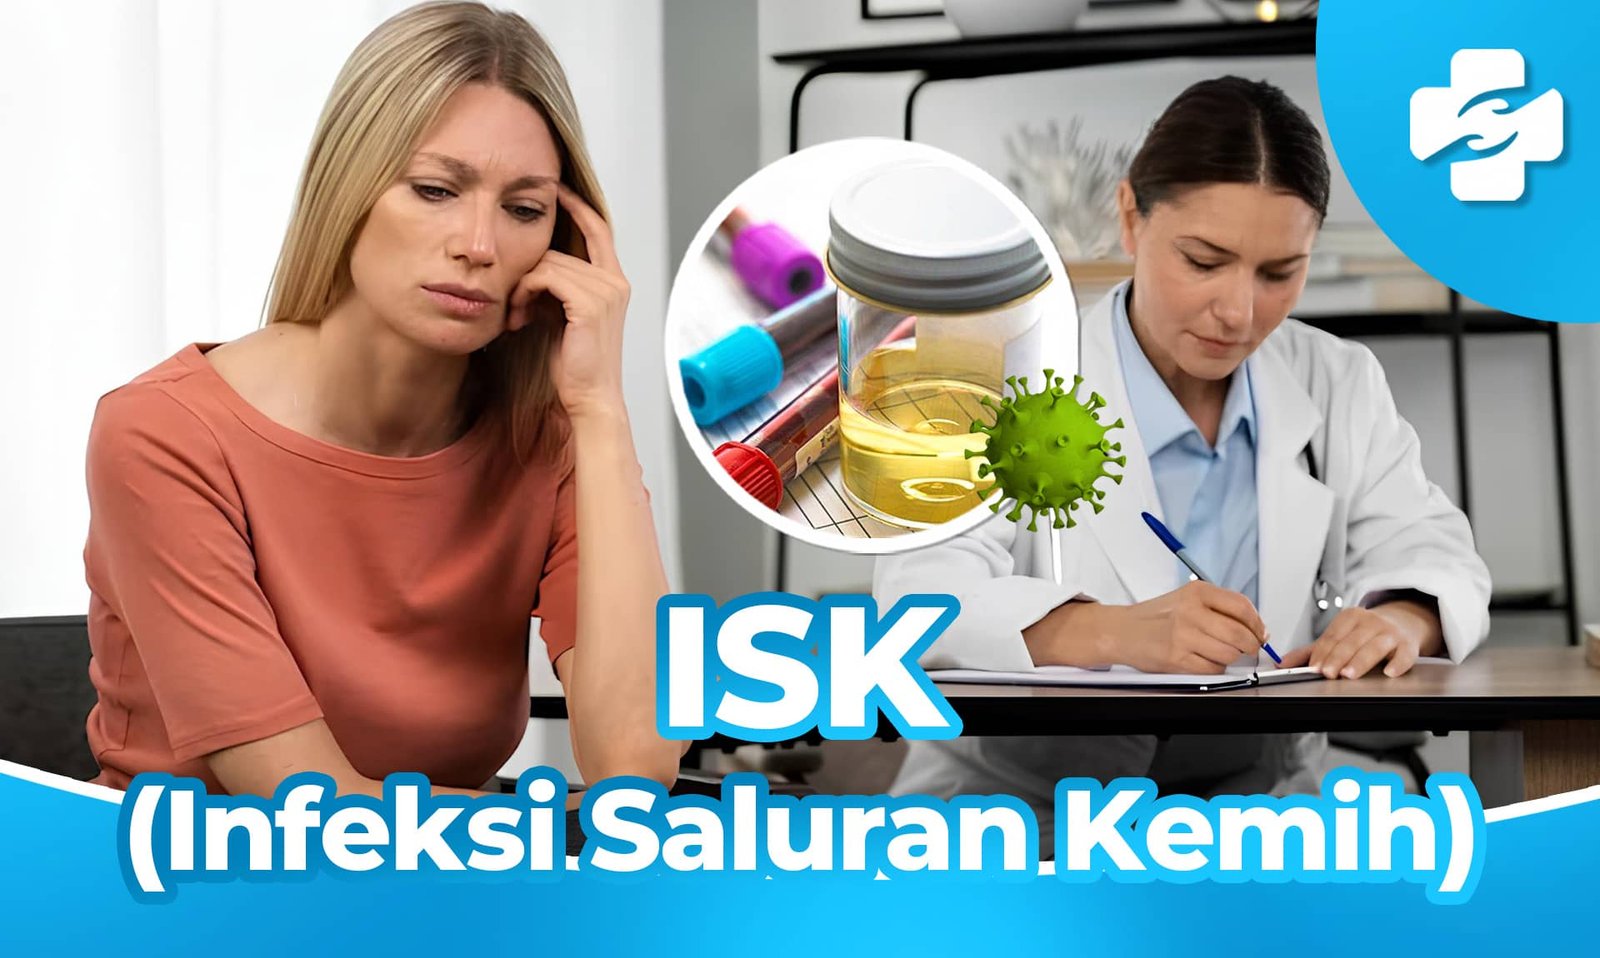 Pengobatan ISK (Infeksi Saluran Kemih) - Klinik Utama Sentosa